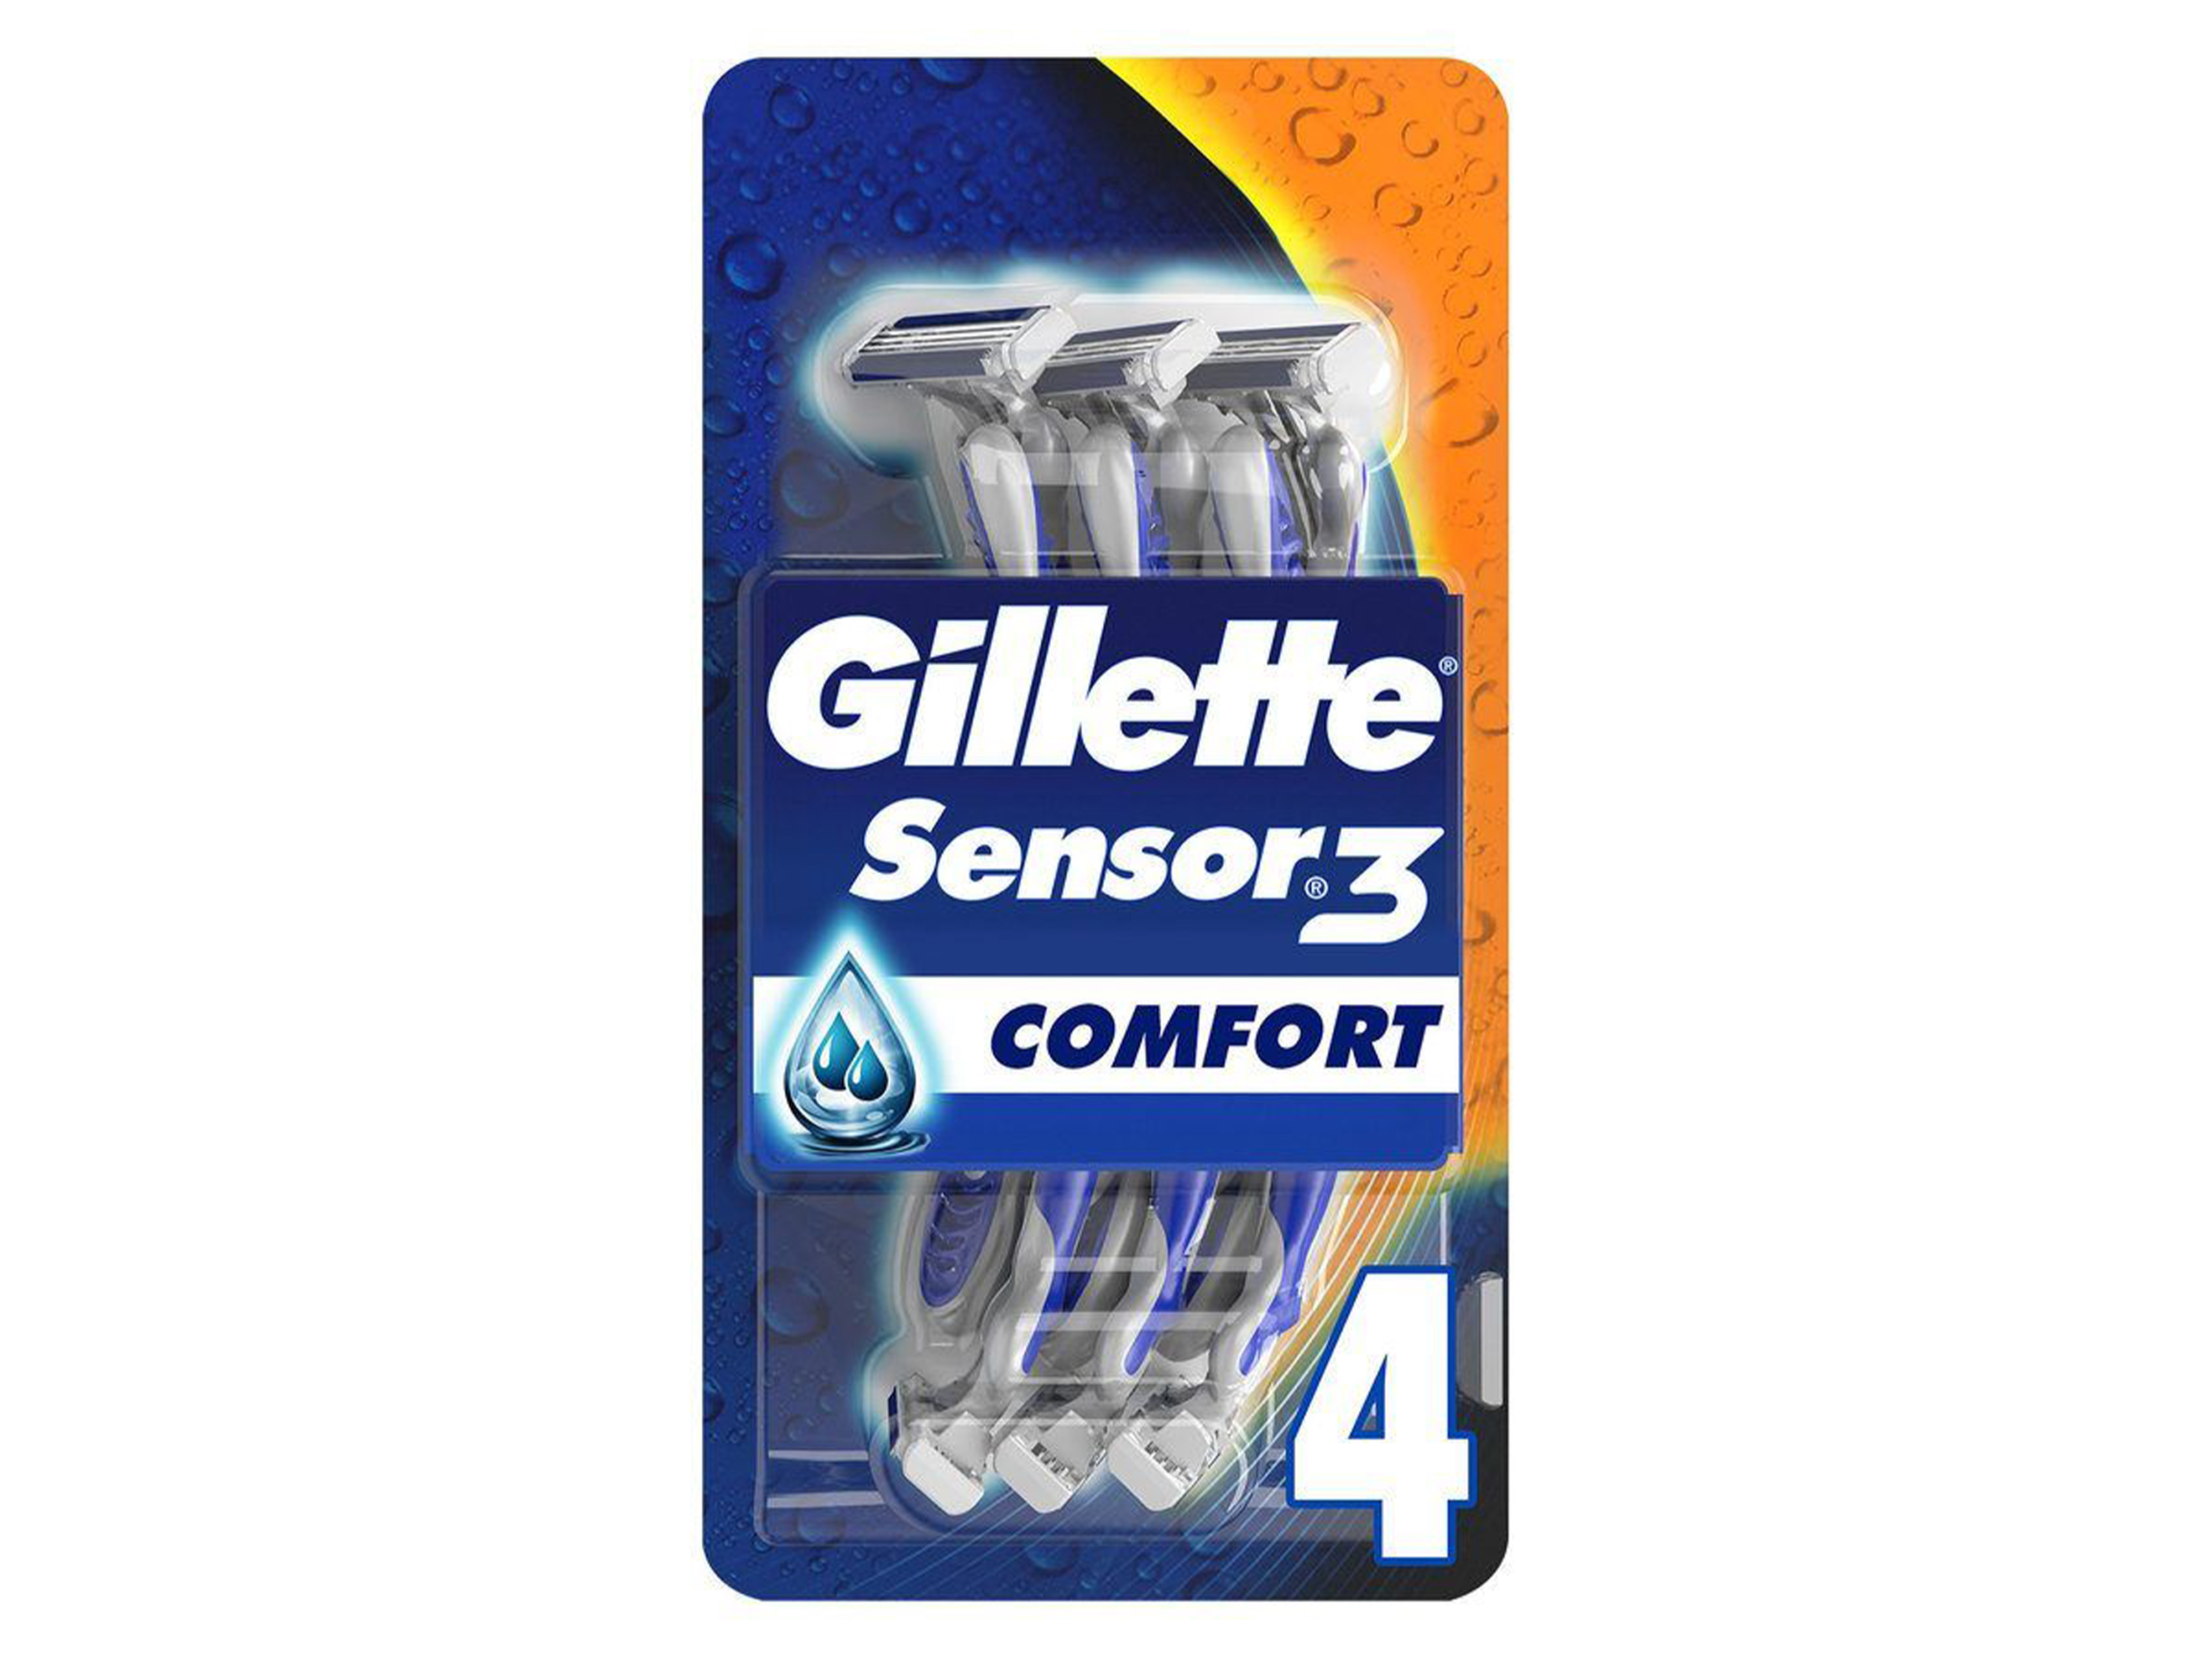 Gillette Sensor 3 engangshøvel, 4 stk.